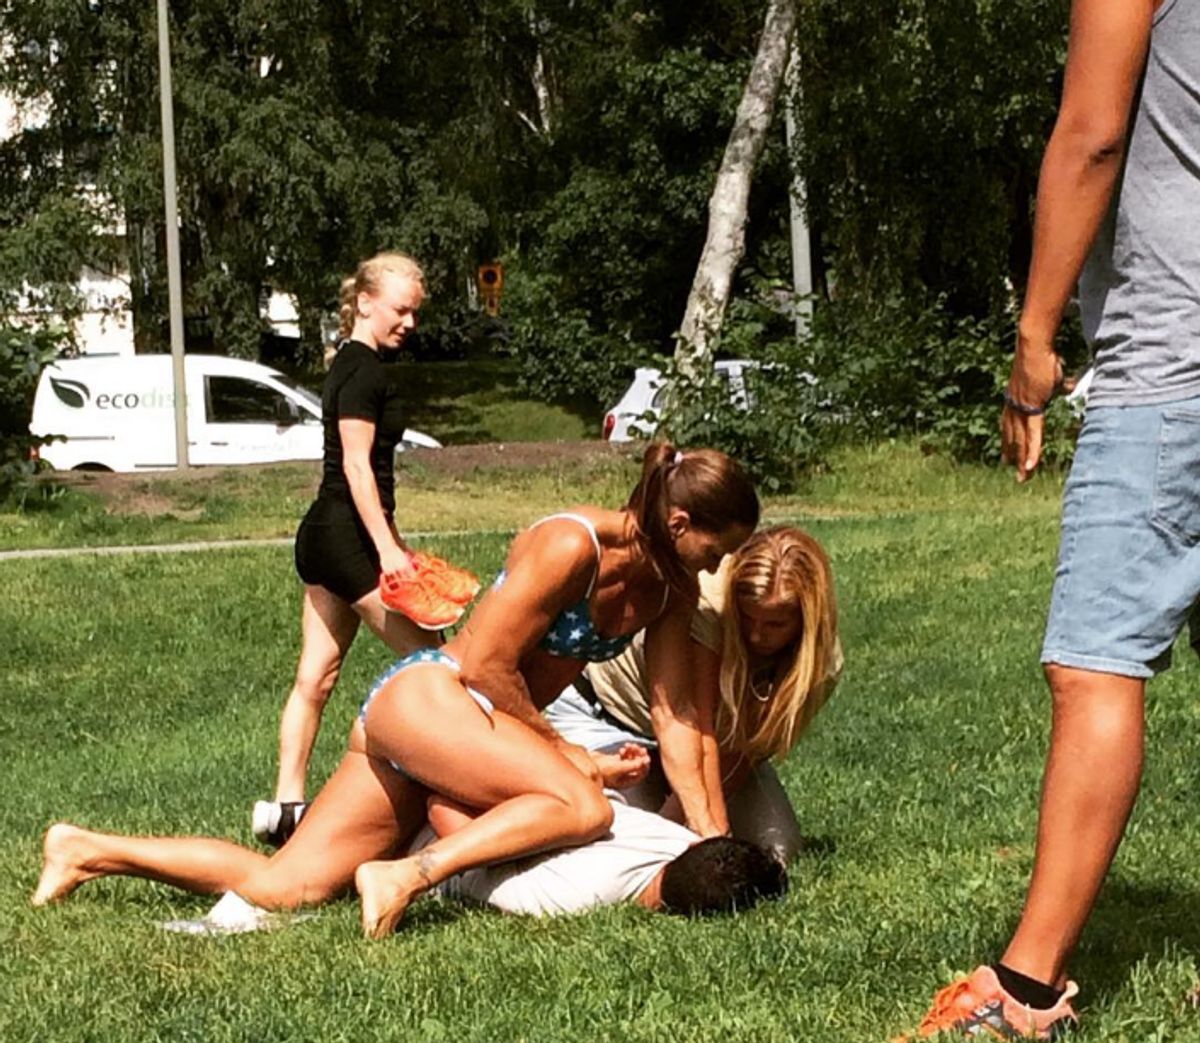 Mikaela Kellner og hendes veninde holder her fast i en tricktyv, der kort forinden forsøgte at stjæle fra kvinderne. Foto: Screenshot fra Instagram.